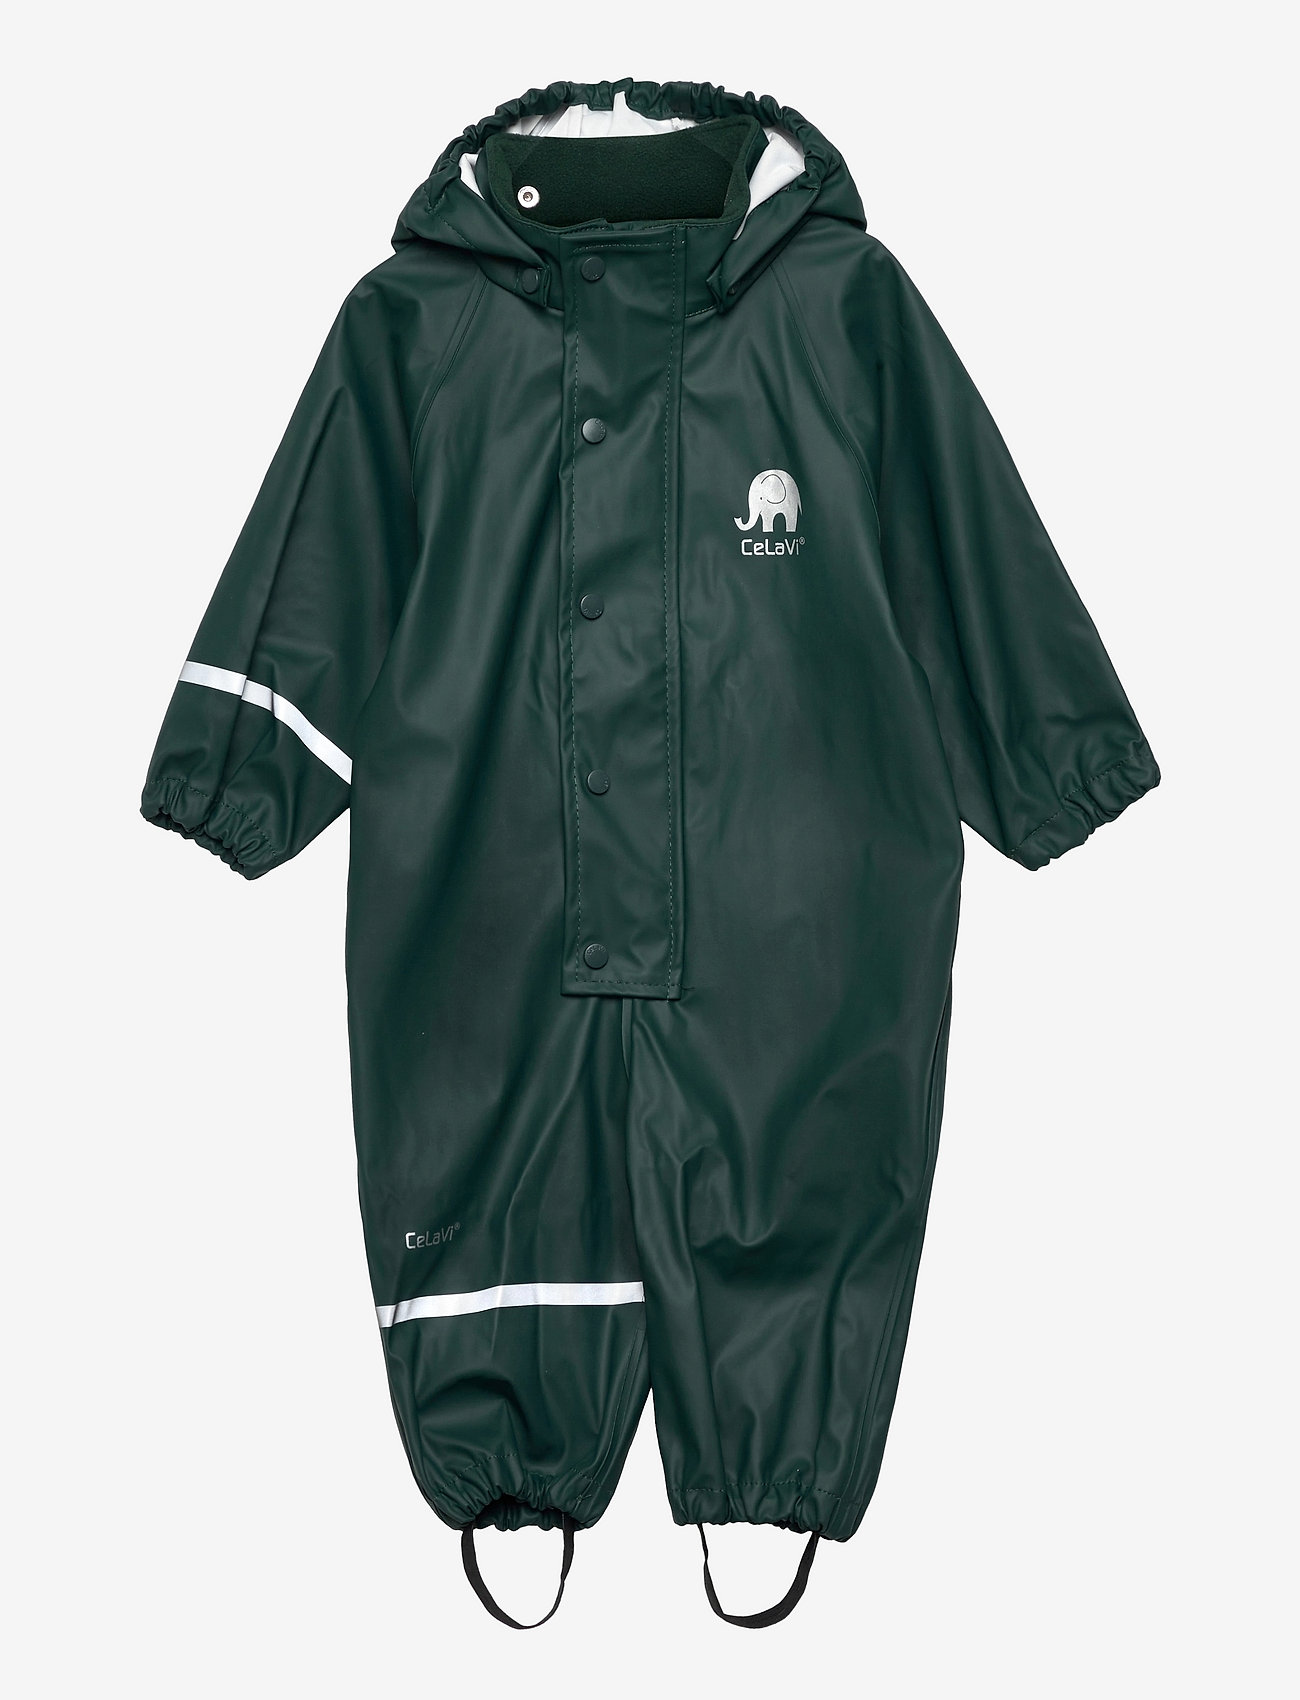 CeLaVi - Rainwear suit -Solid PU - lietus valkā kombinezoni - ponderosa pine - 0